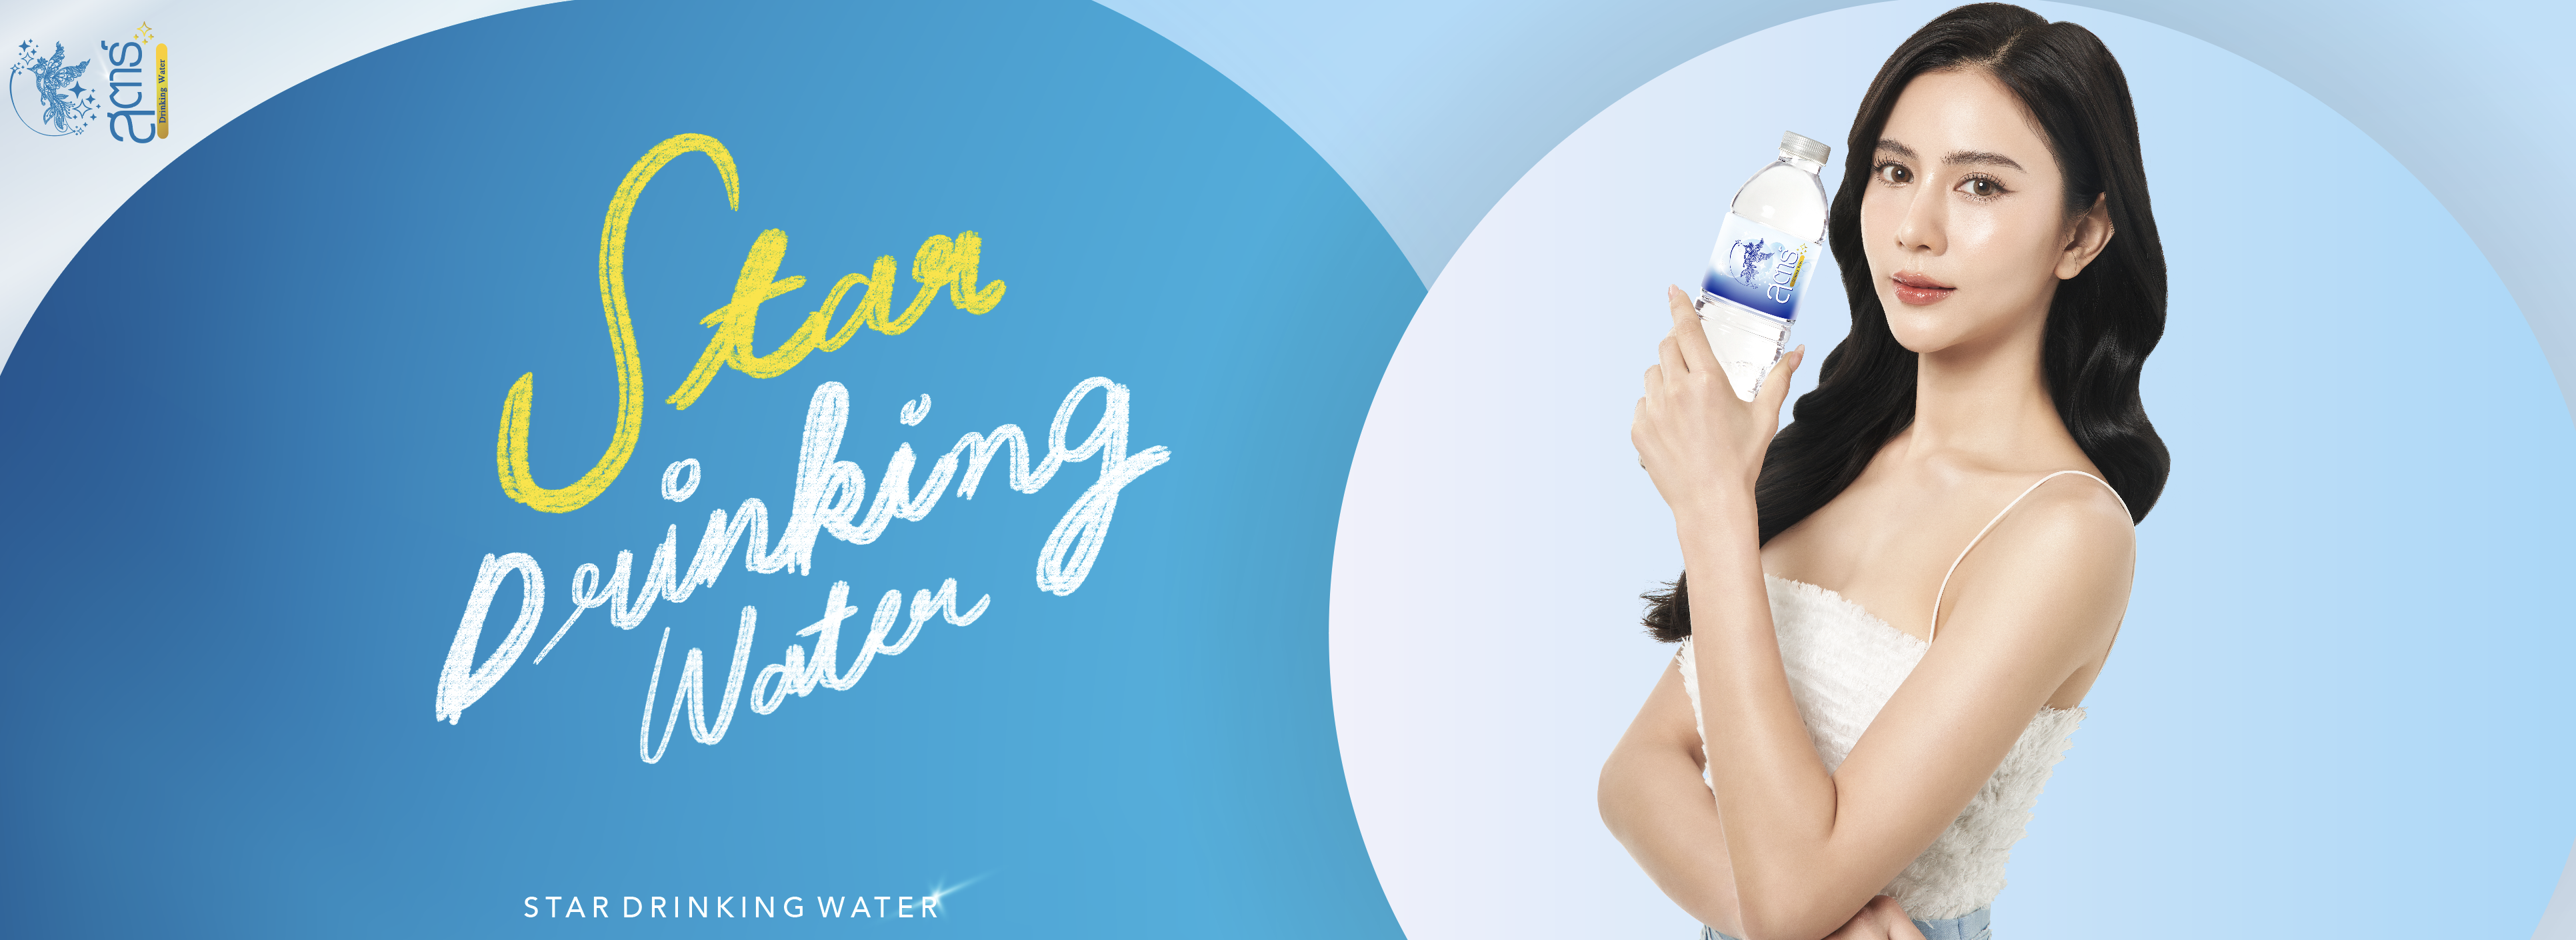 stardrinkingwater-water-น้ำดื่มสตาร์-drinkingwater-3